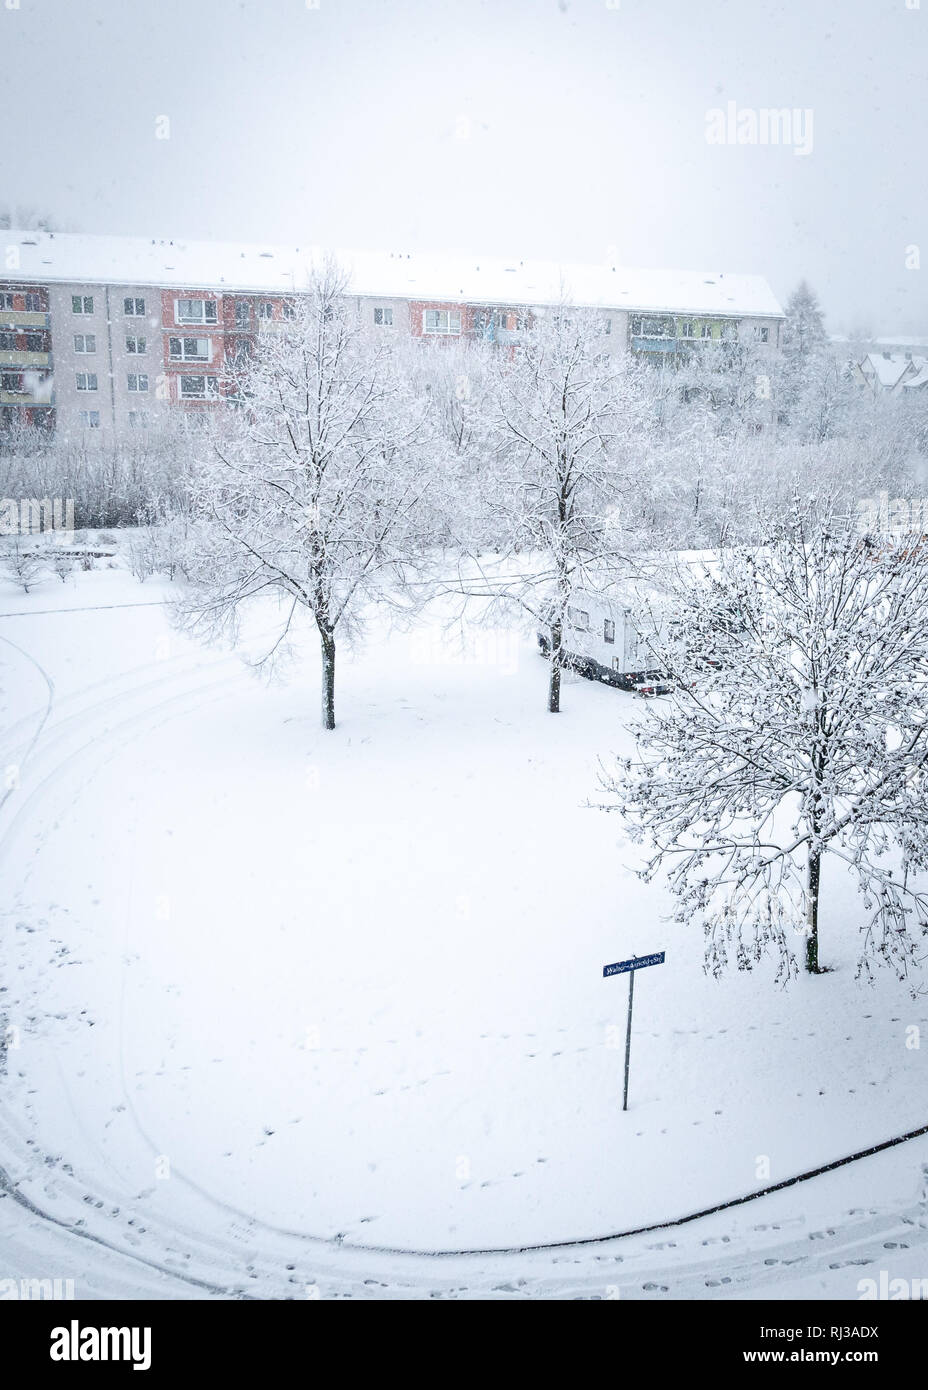 Dresda, Germania (2019): Area soggiorno e parco coperto di neve fresca. (Prospettiva uccello) Foto Stock